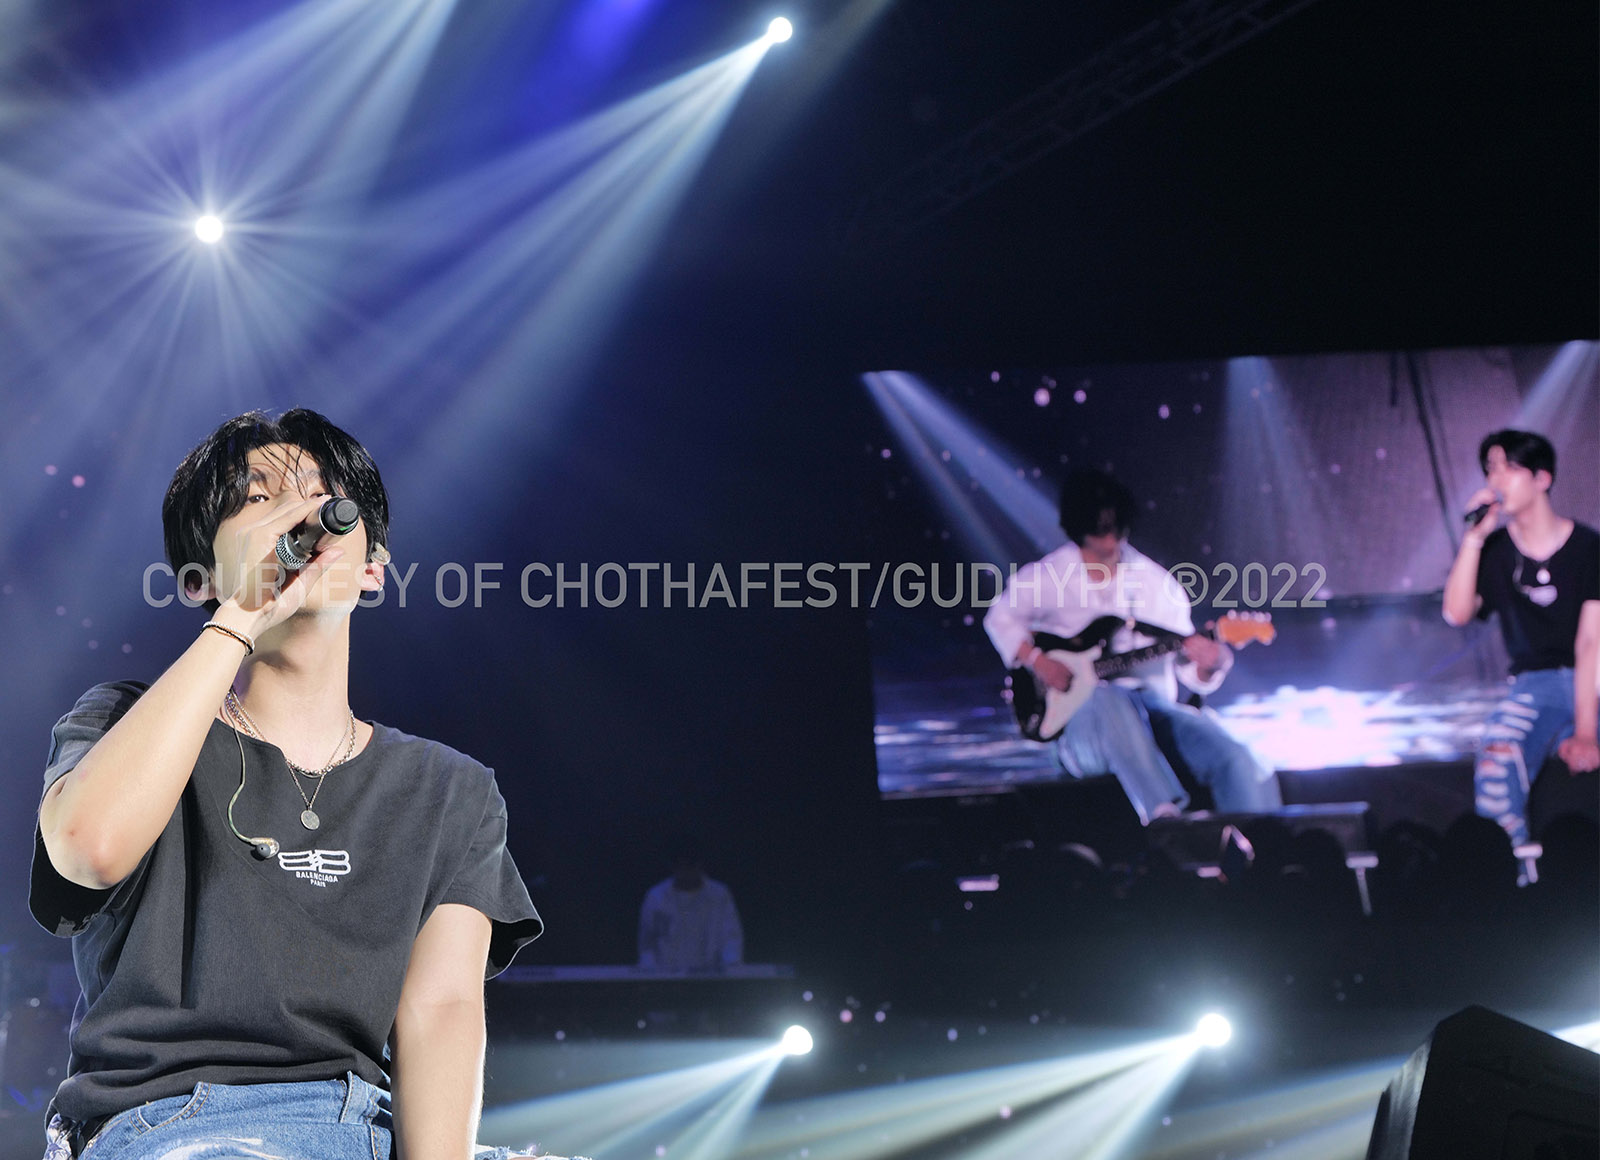 Chothafest 2022, Berhasil Mengobati Rasa Kangen Penggemar K-pop di Indonesia